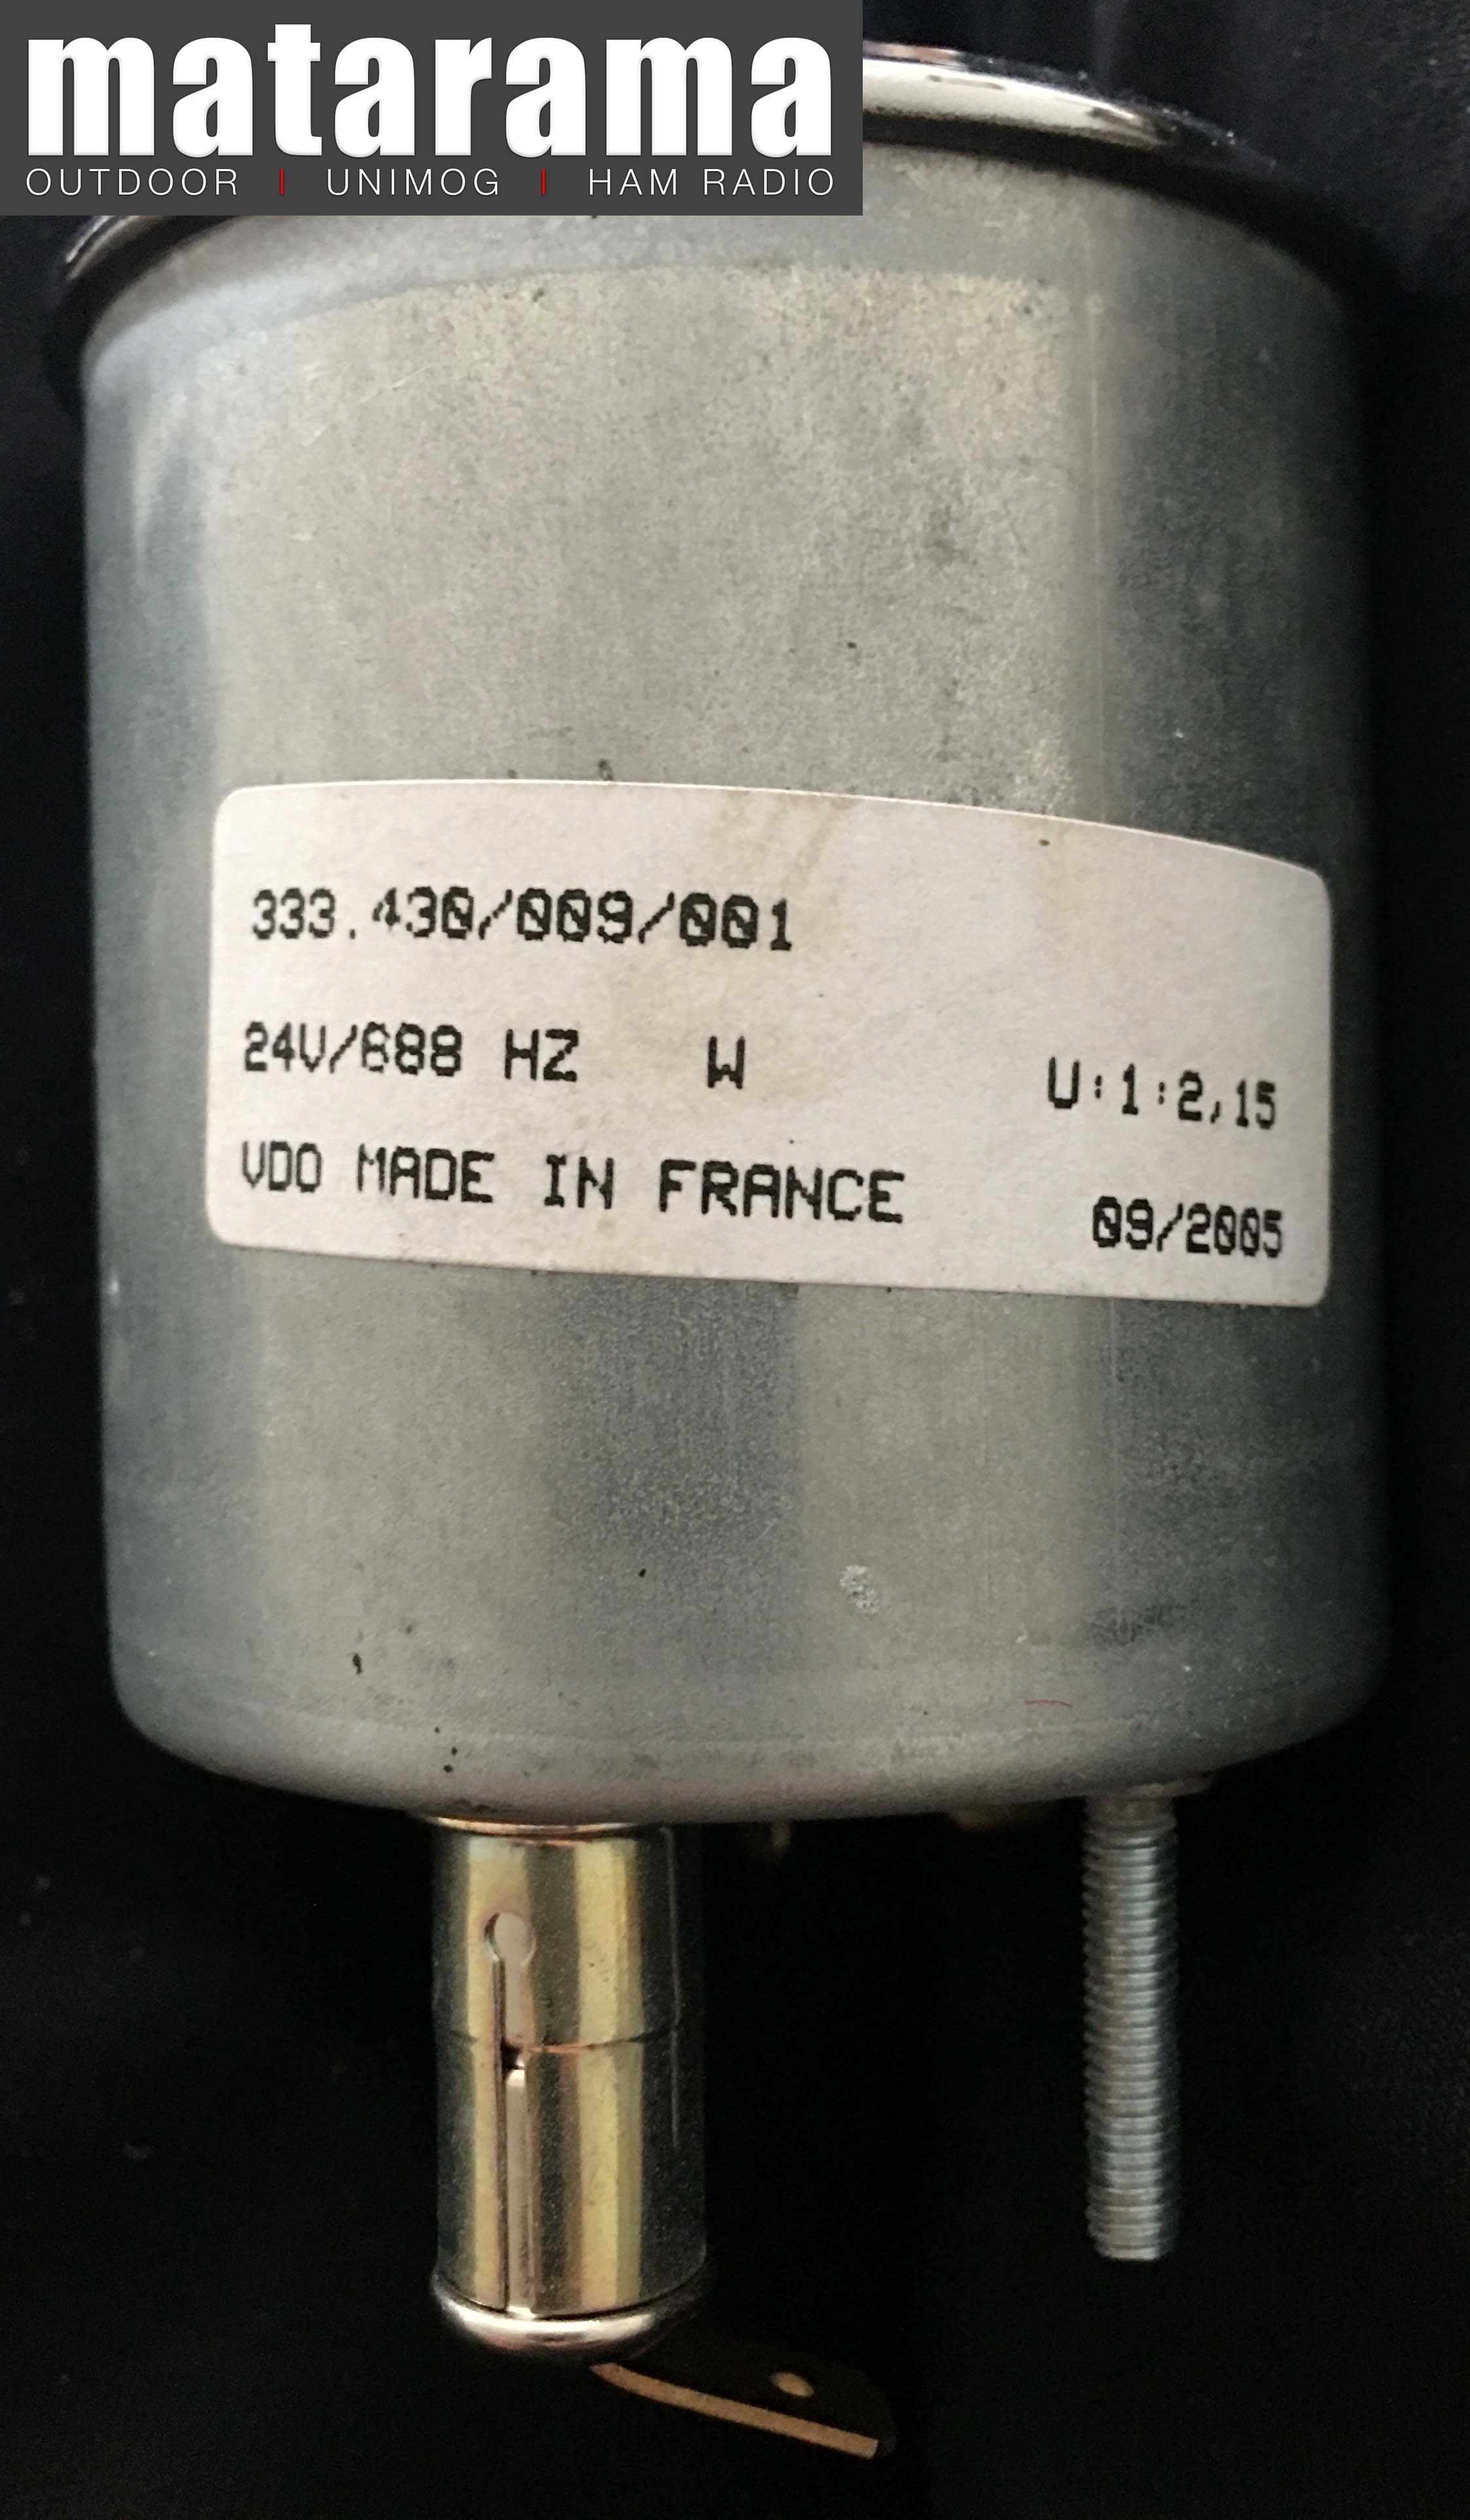 Unimog 406-416-419 VDO tachometer (rev counter) 02 matarama_com